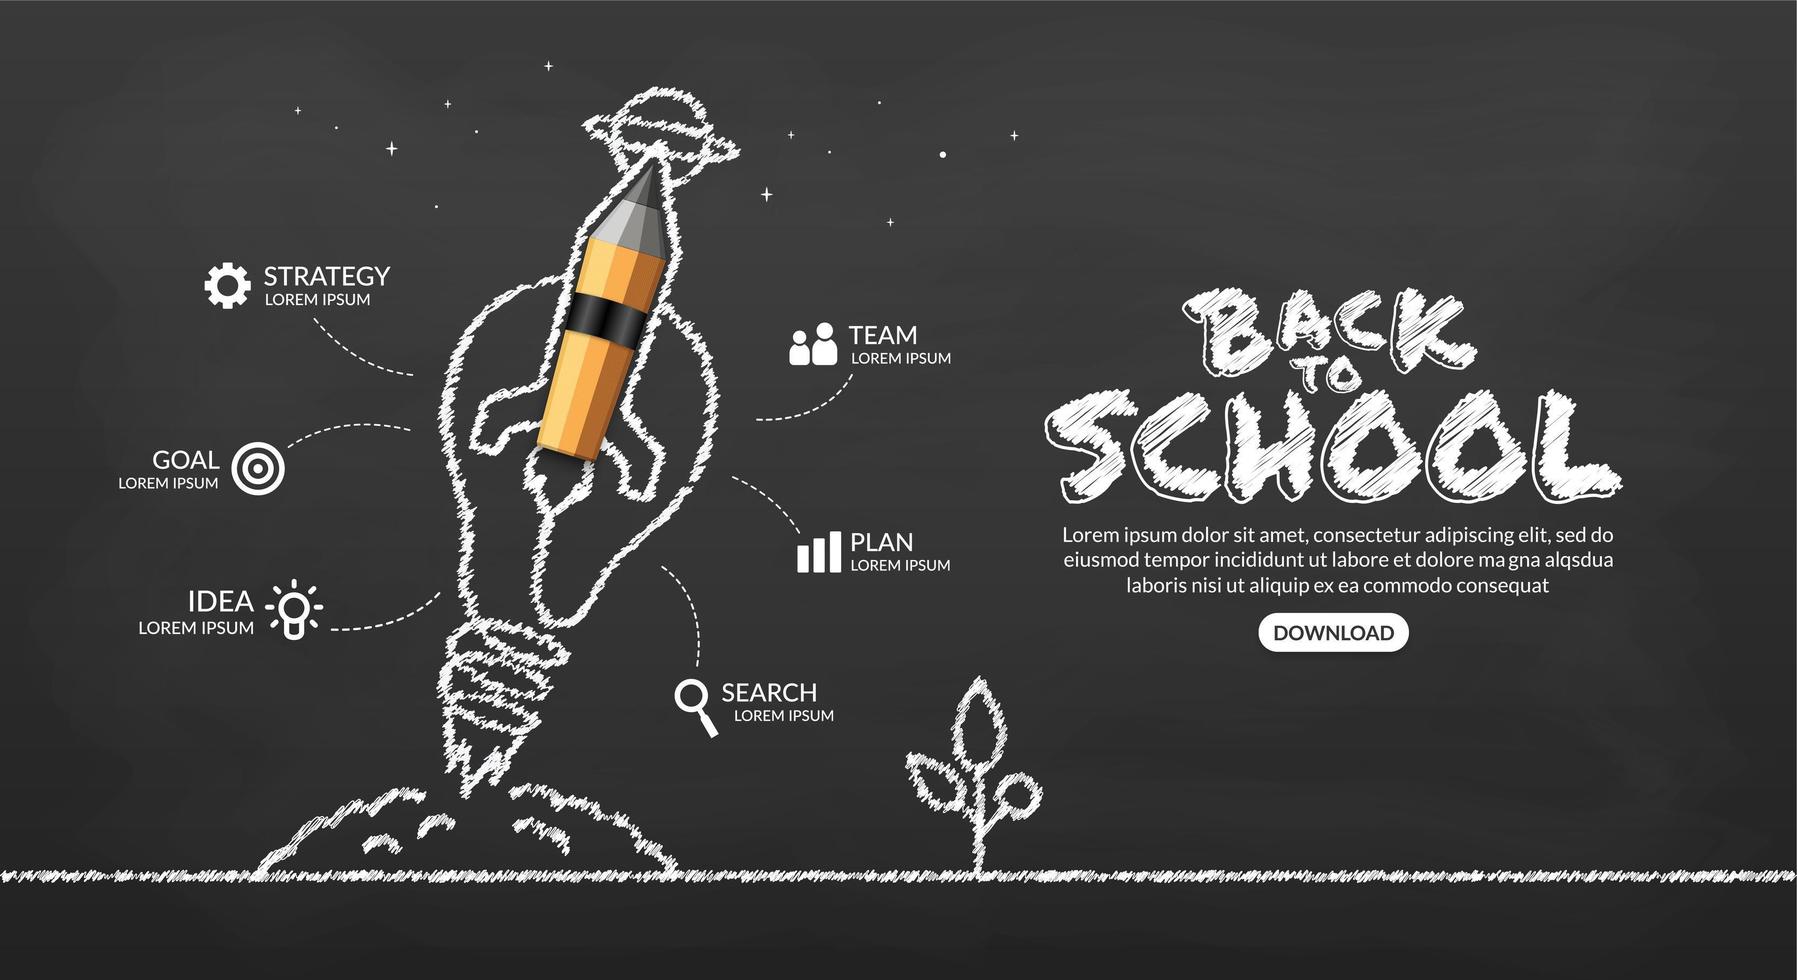 potloodraket met gloeilamp lancering naar ruimte infographic, welkom terug op school achtergrond vector